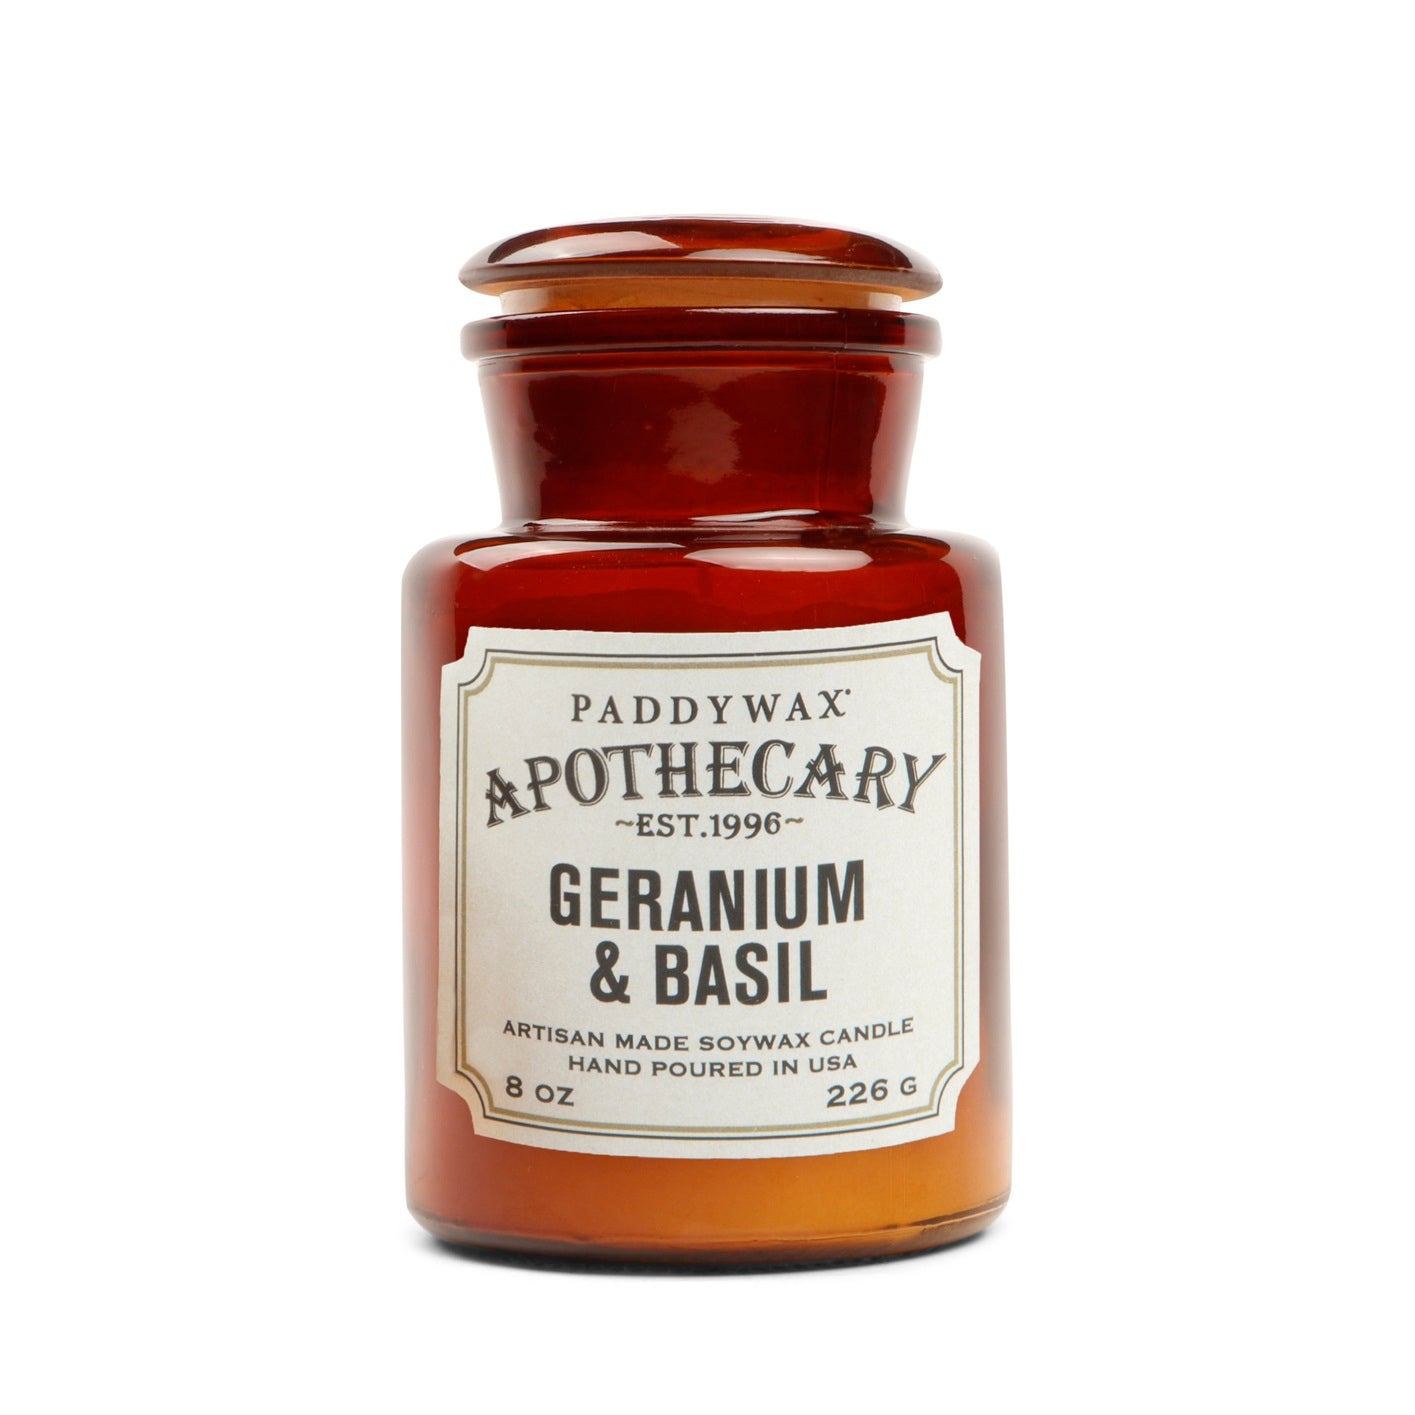 Apothecary Candle (Geranium & Basil)